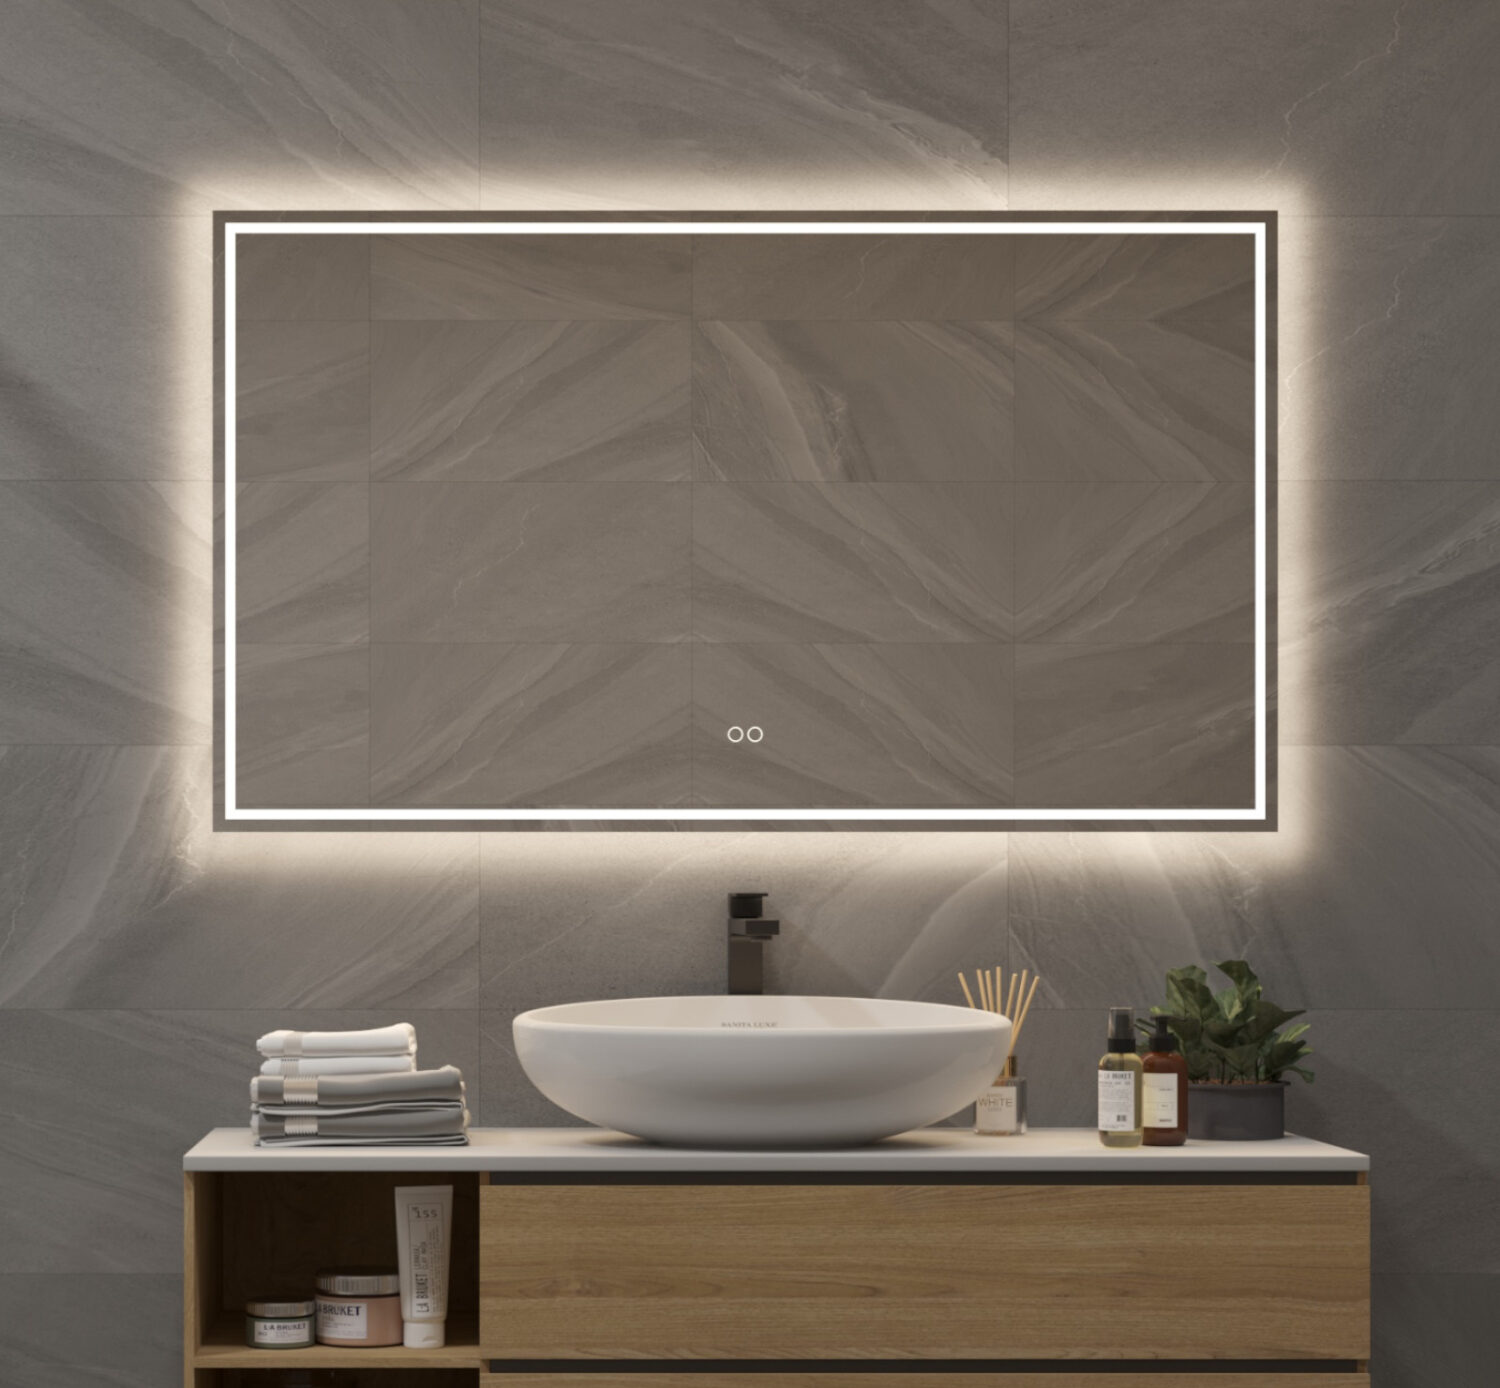 Meesterschap Onverbiddelijk draad Badkamerspiegel met LED verlichting, verwarming, instelbare lichtkleur en  dimfunctie 120x70 cm - Designspiegels